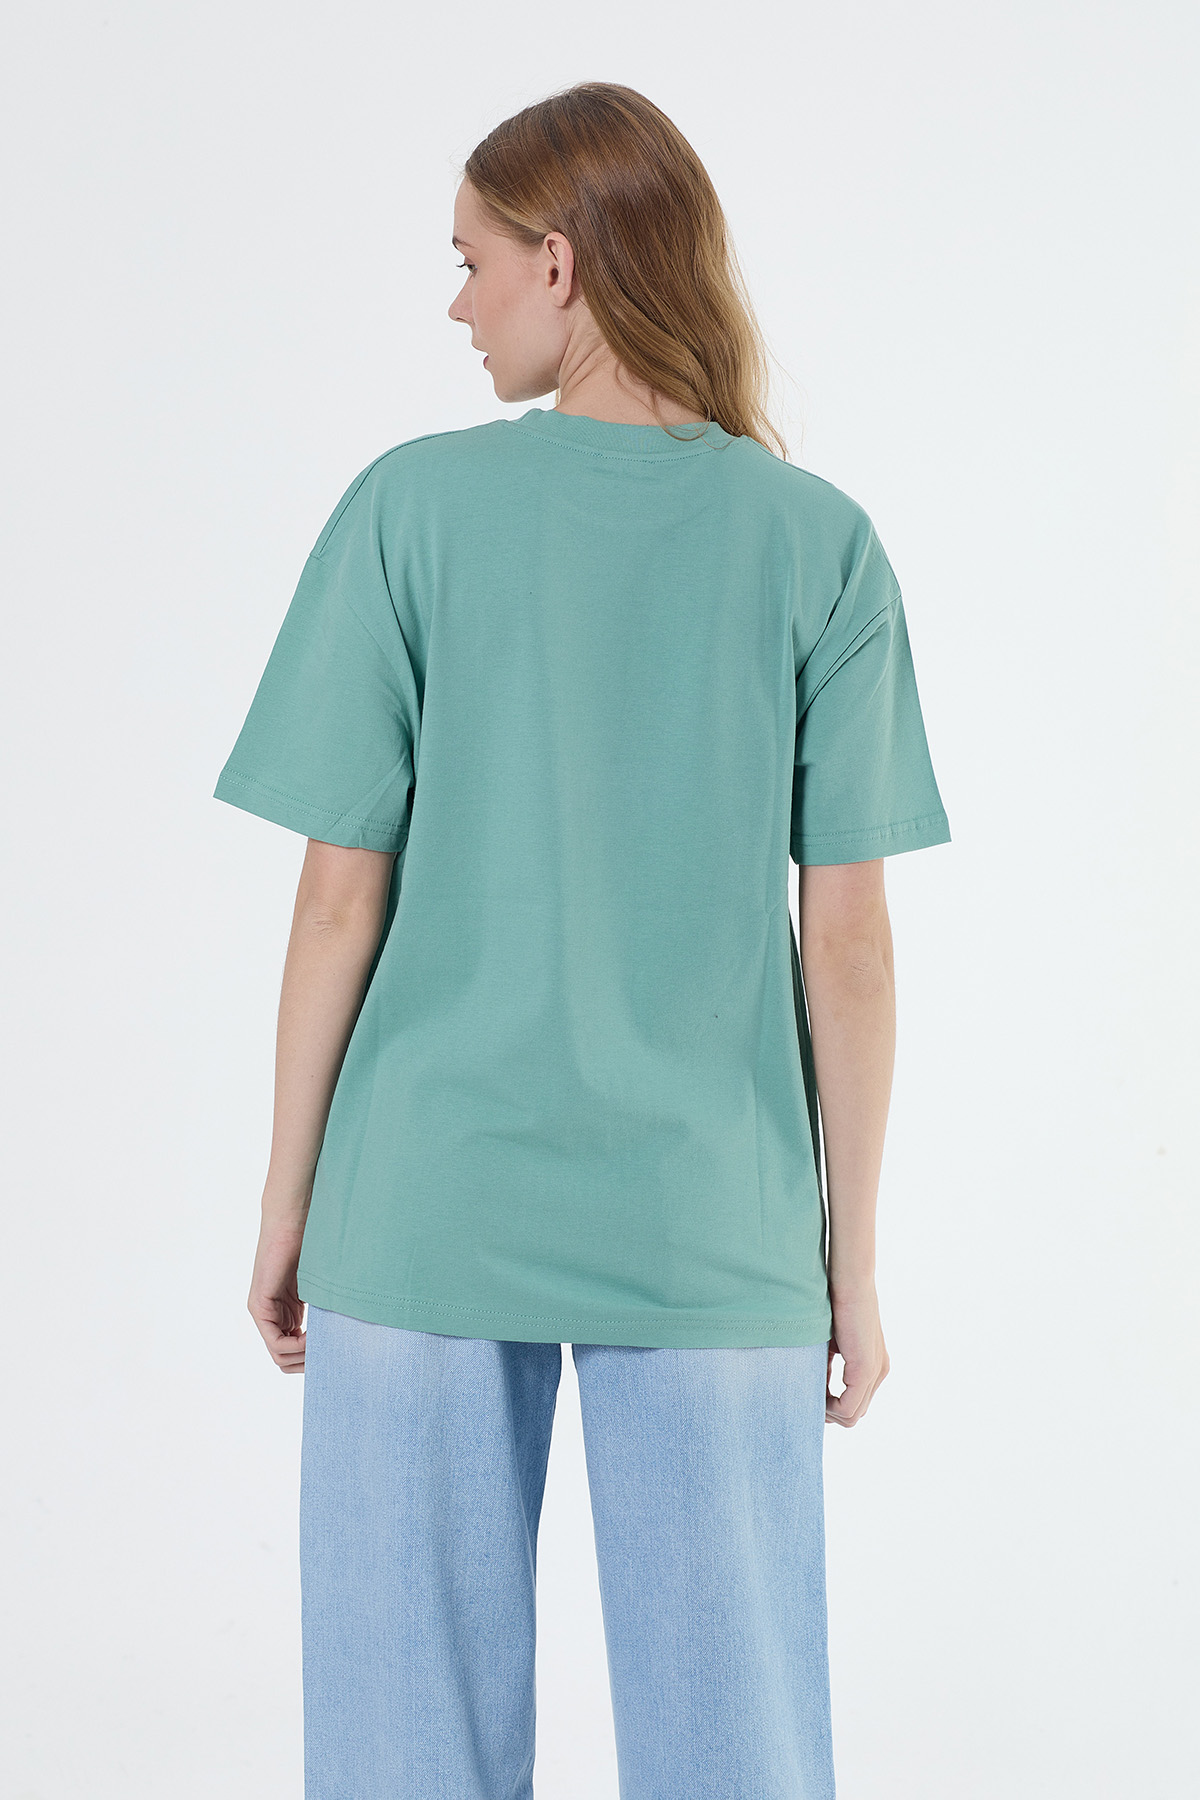 Denigma AR Kadın Handy Regular Fit Yeşil Tshirt